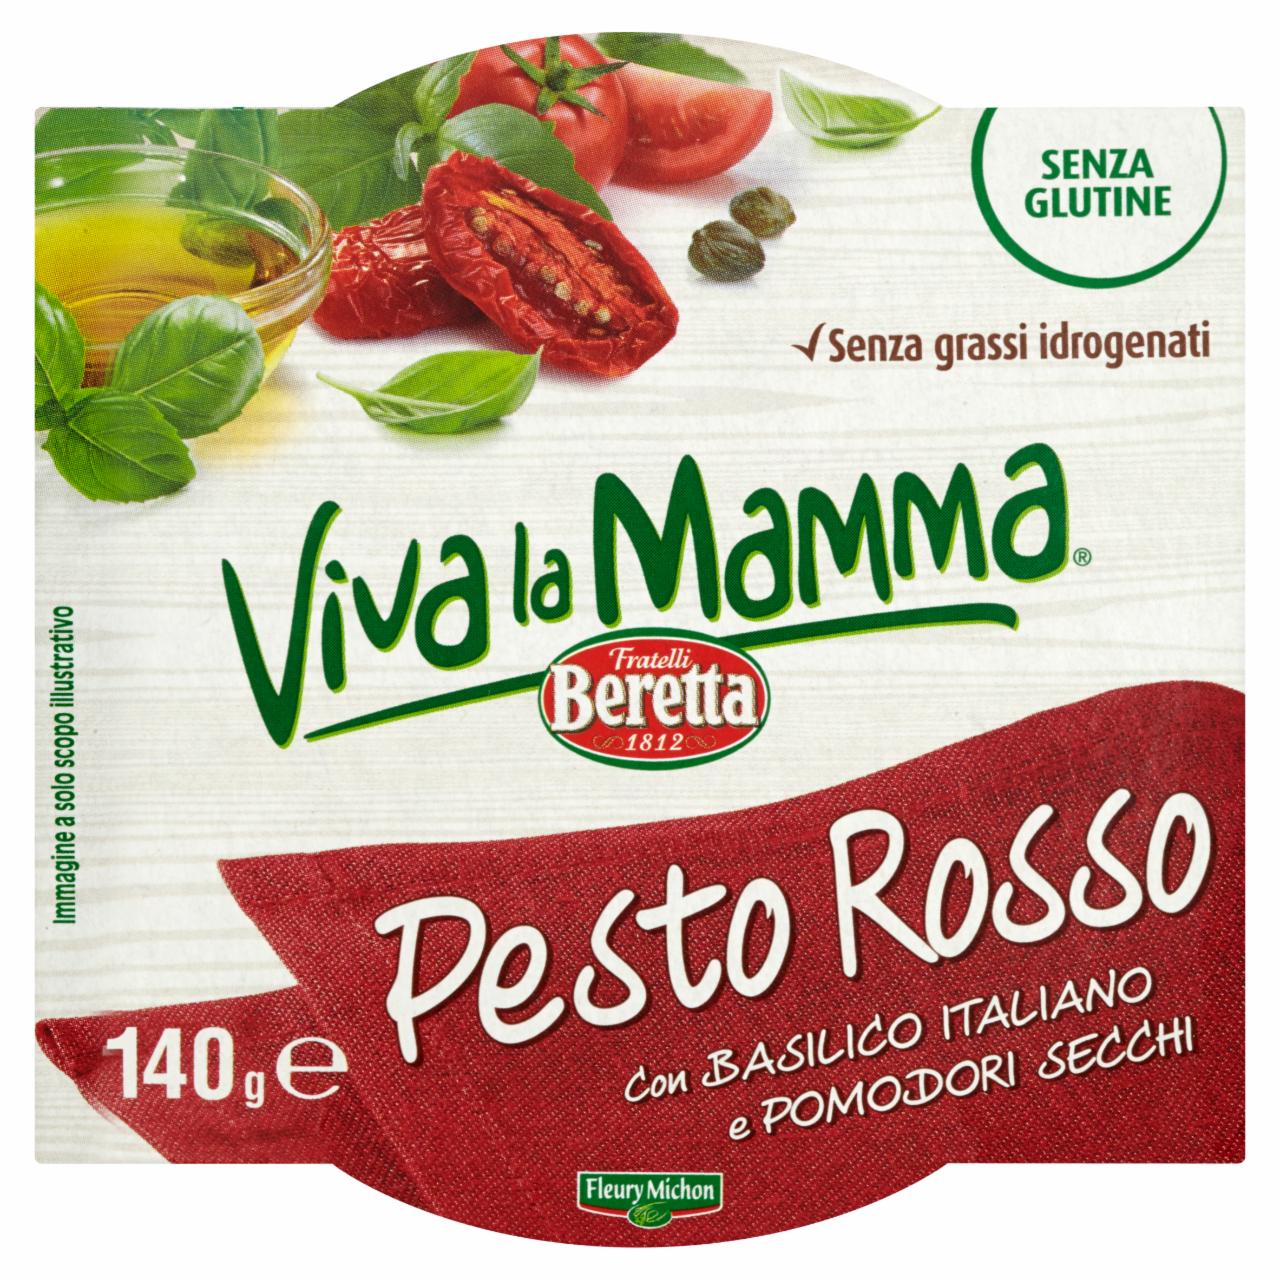 Zdjęcia - Fratelli Beretta Viva la Mamma Pesto Rosso 140 g